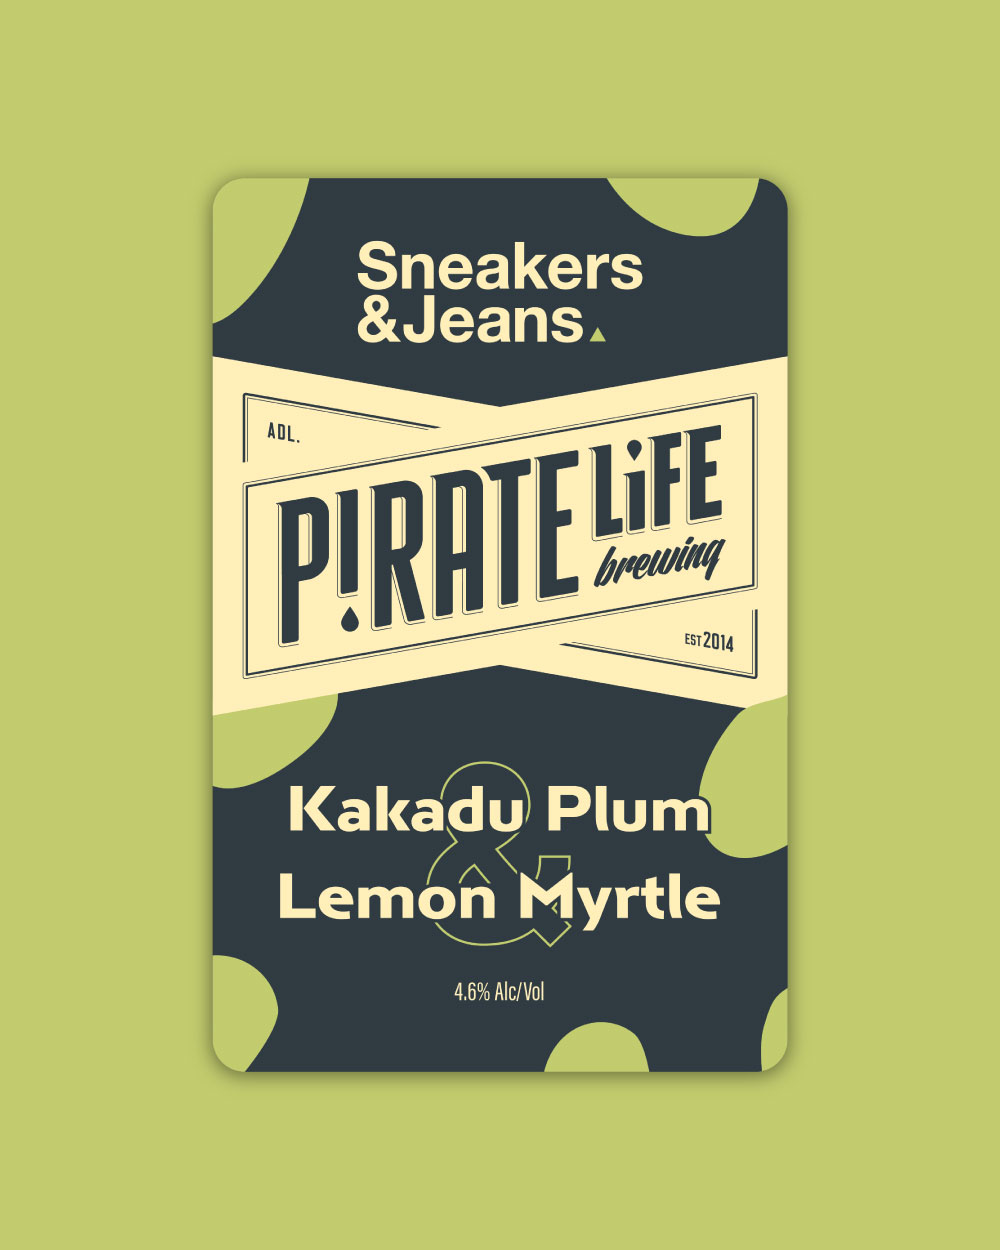 Kakadu Plum & Lemon Myrtle